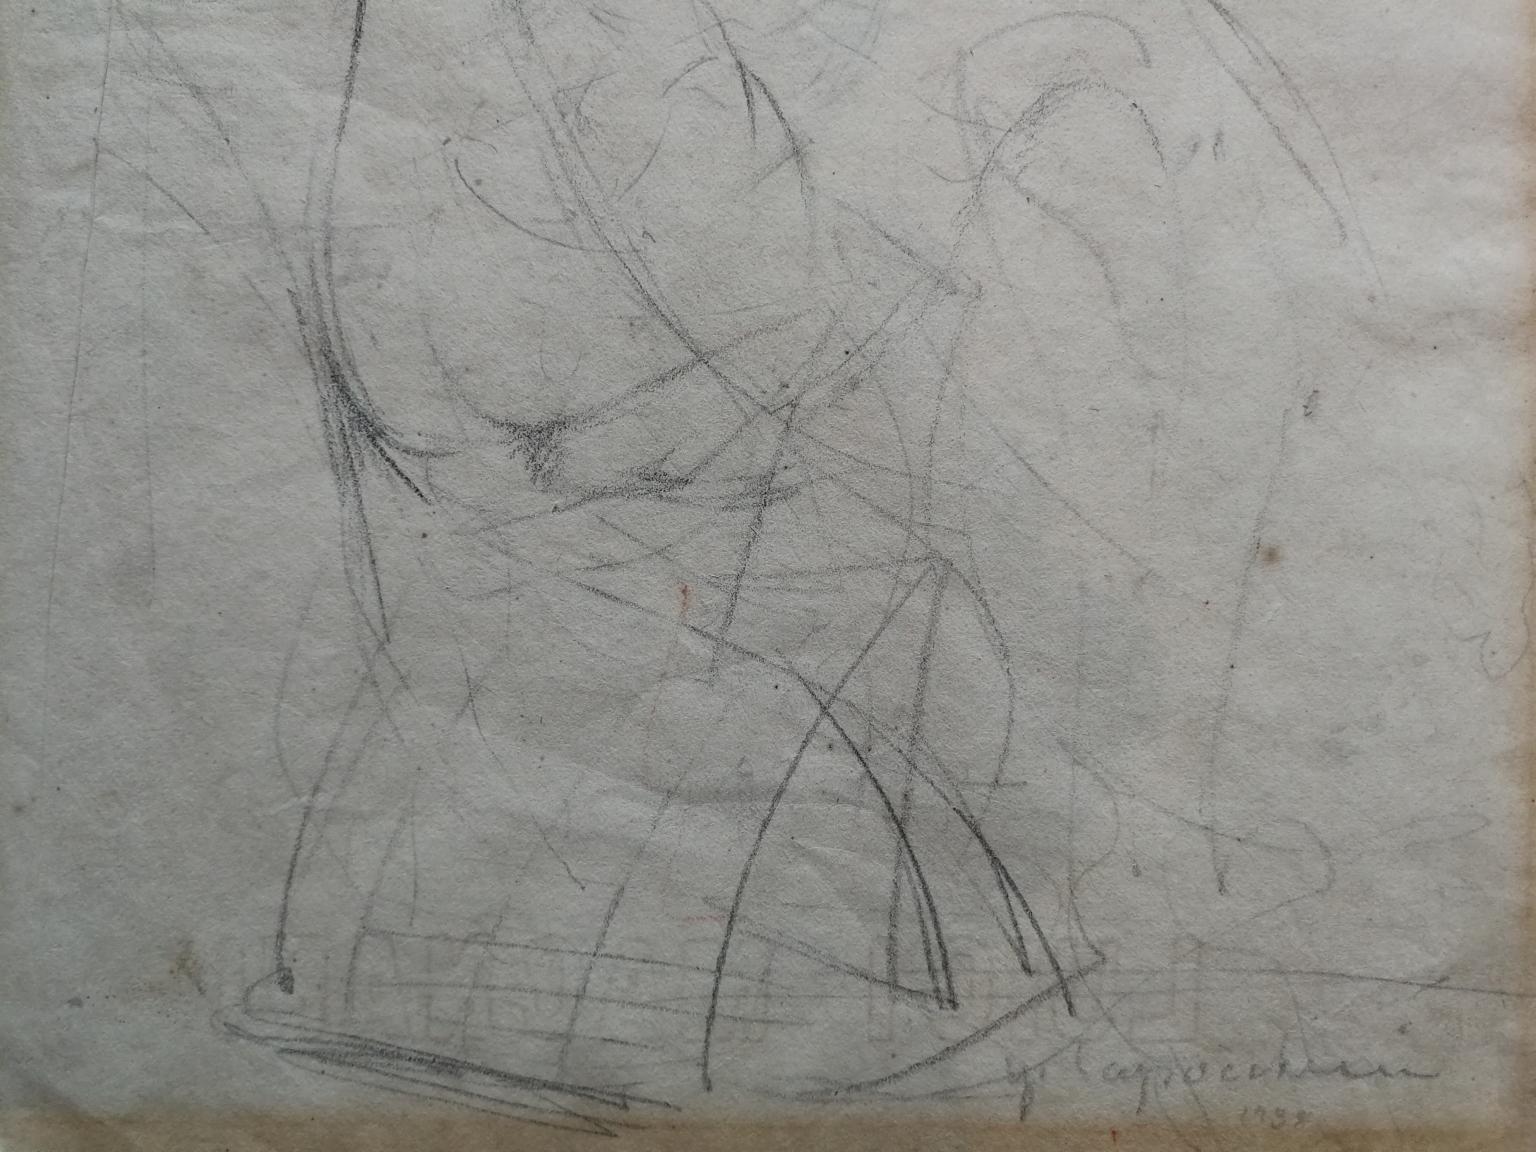 Disegno fronte retro matita su carta, 330 x 240 mm. 
Auf einer Seite, in der Vertikalen, ist eine nackte Frau abgebildet, die in einer häuslichen Umgebung sitzt und versucht, sich an den Redner zu wenden. Bestimmte Aspekte des Ausdrucks und der